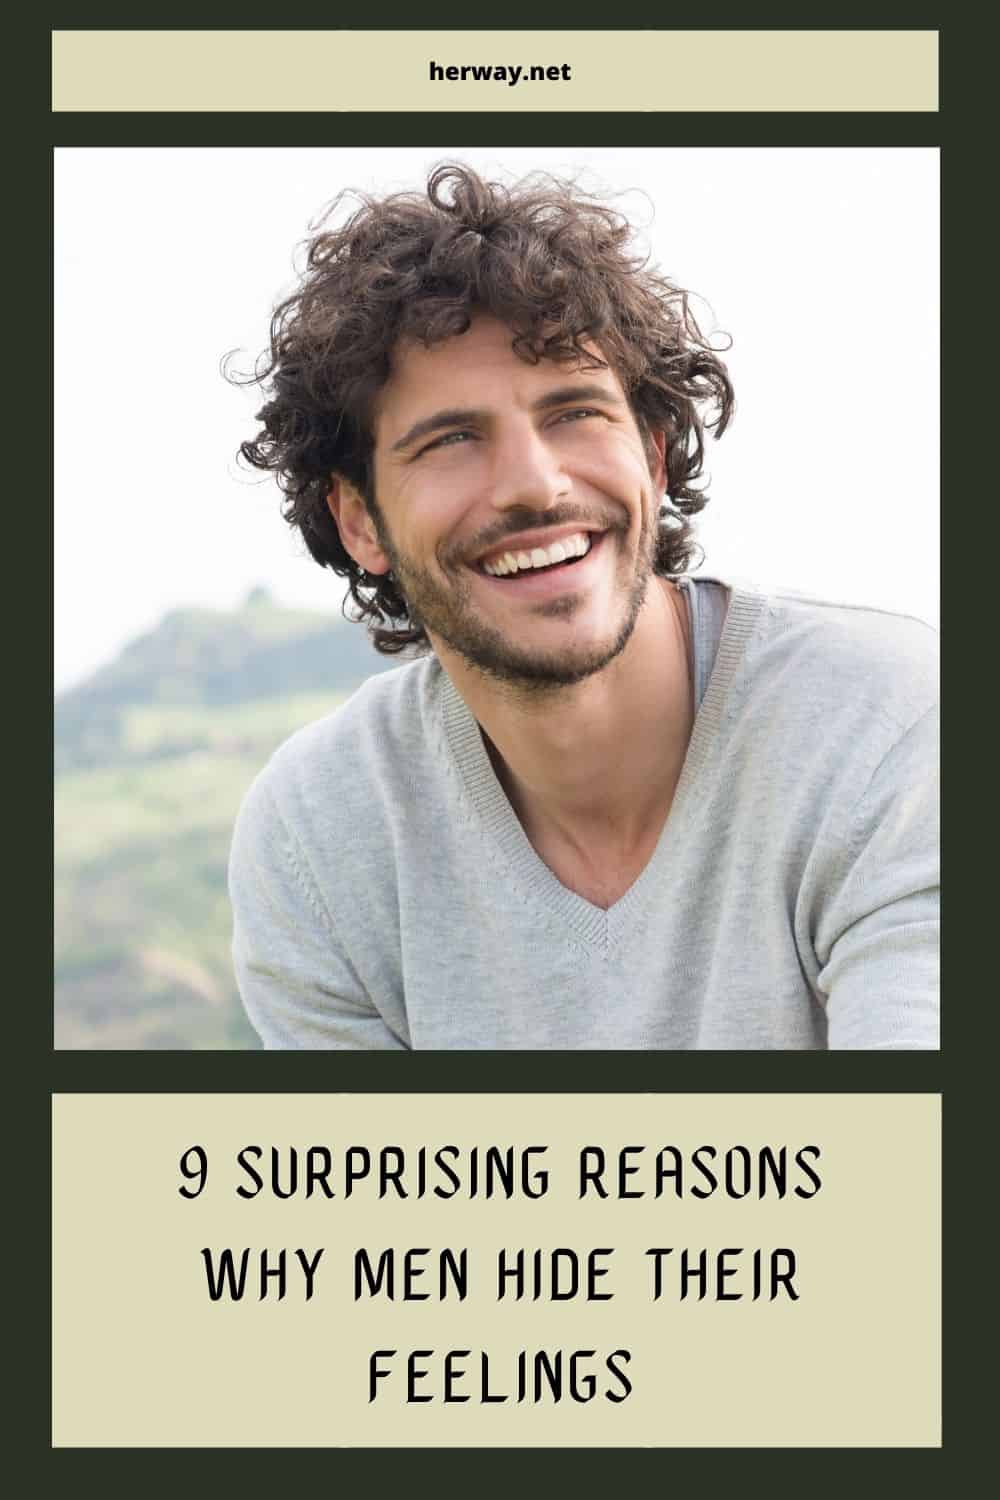 9 motivi sorprendenti per cui gli uomini nascondono i propri sentimenti